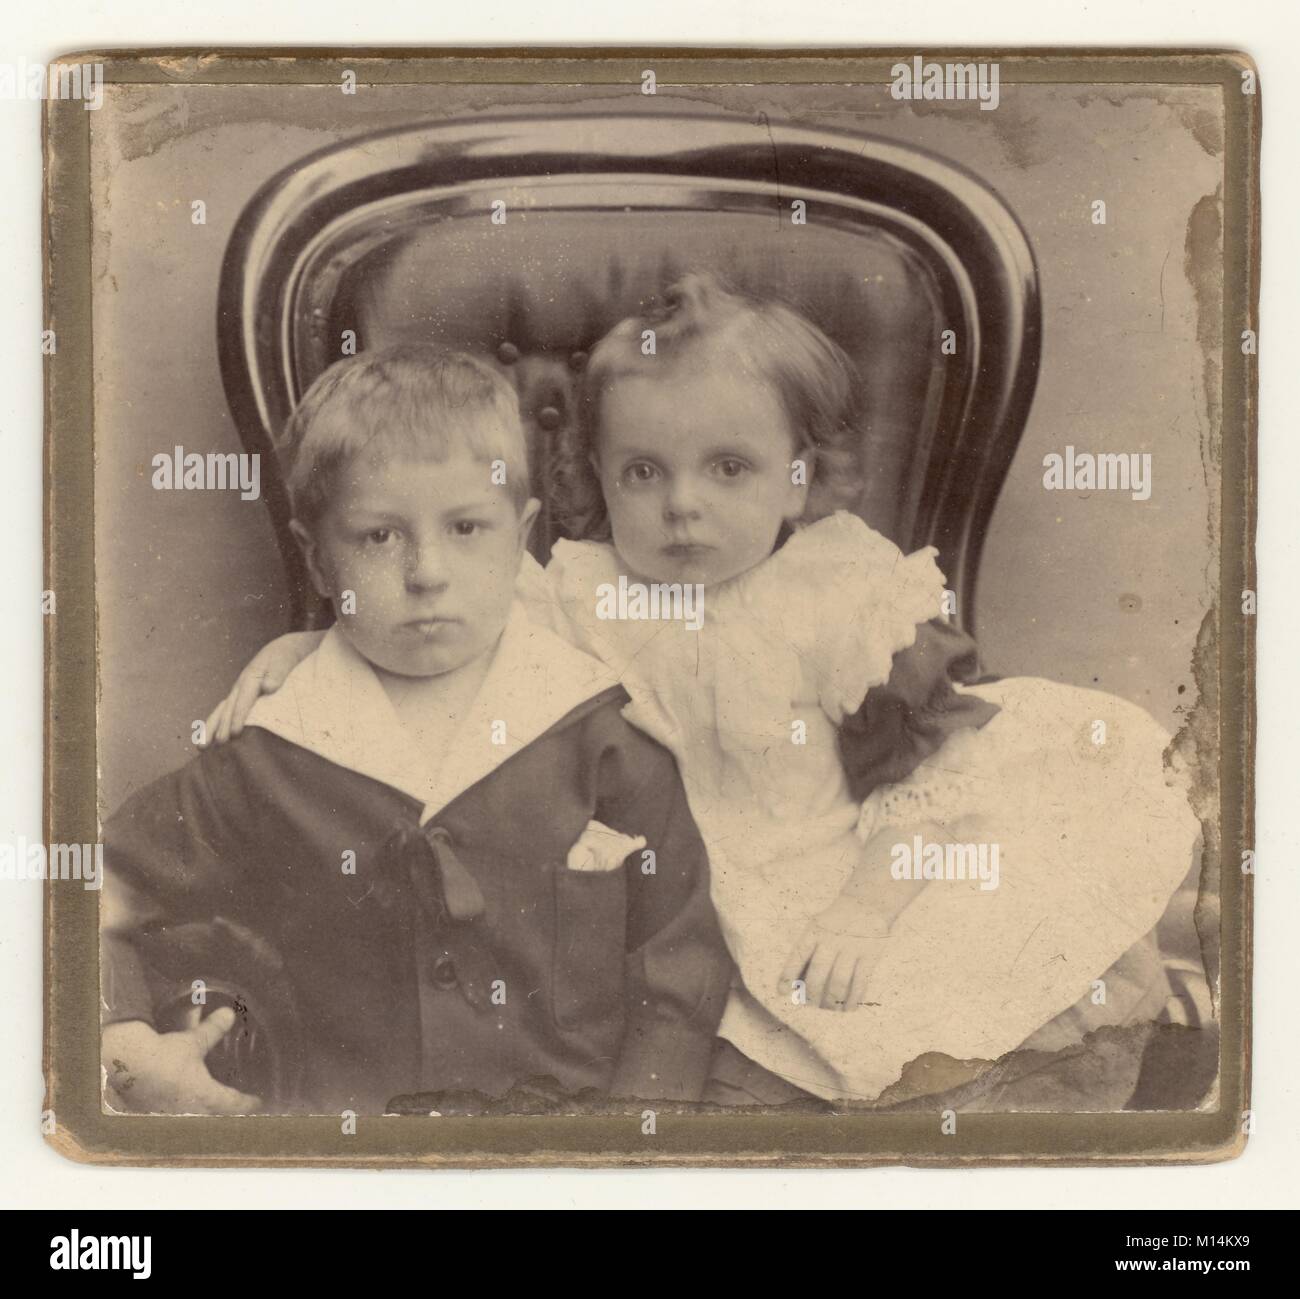 Charmant studio victorien original portrait photographique d'un jeune garçon avec sa petite sœur, frères et sœurs, assis dans un fauteuil à bouton. Le garçon porte un costume de marin tendance. Vers 1890, Royaume-Uni Banque D'Images